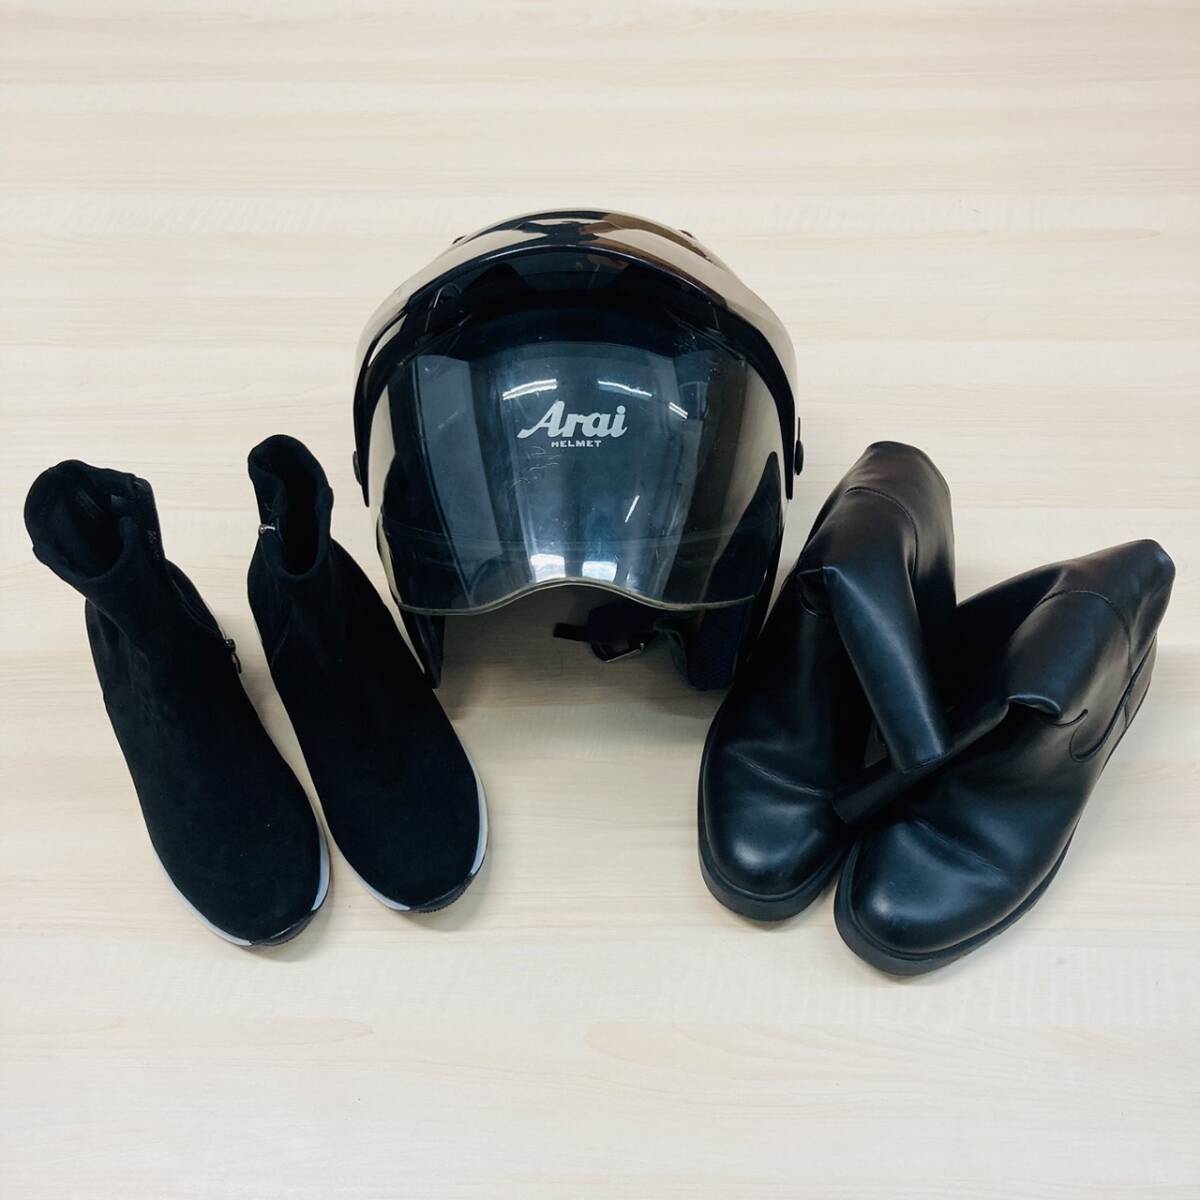 [OP6169FK]1 иен старт ~ смешанные товары . суммировать обувь женский ботинки Arai ARAI шлем мужской черный мотоцикл б/у товар товары долгосрочного хранения 